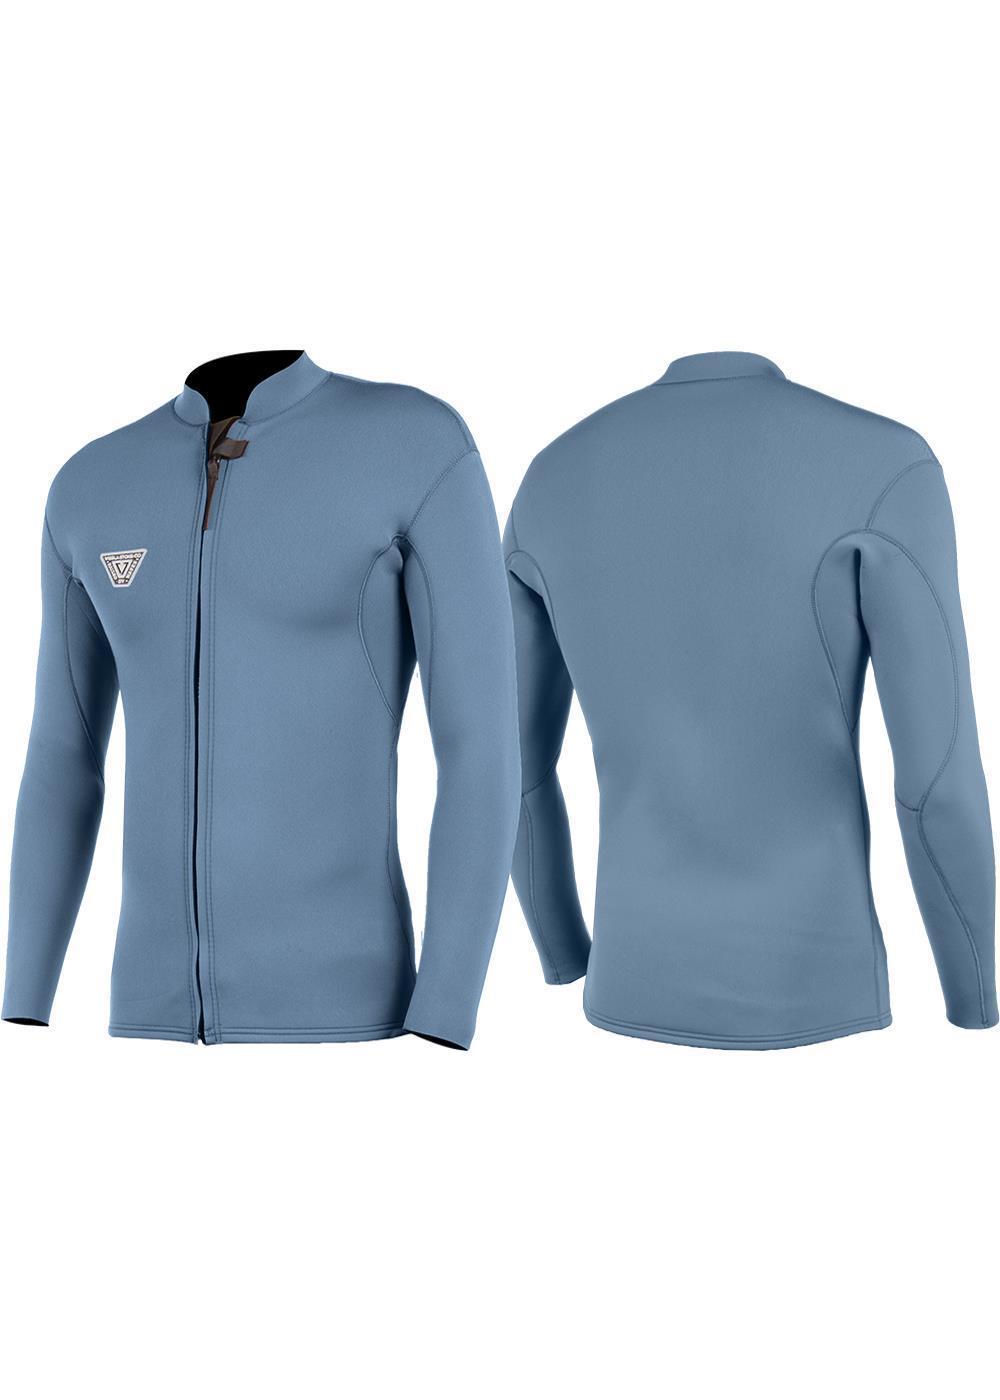 Vissla Men's Solid Sets Harbor Blue 2MM Wetsuit Jacket. Front and Back View.